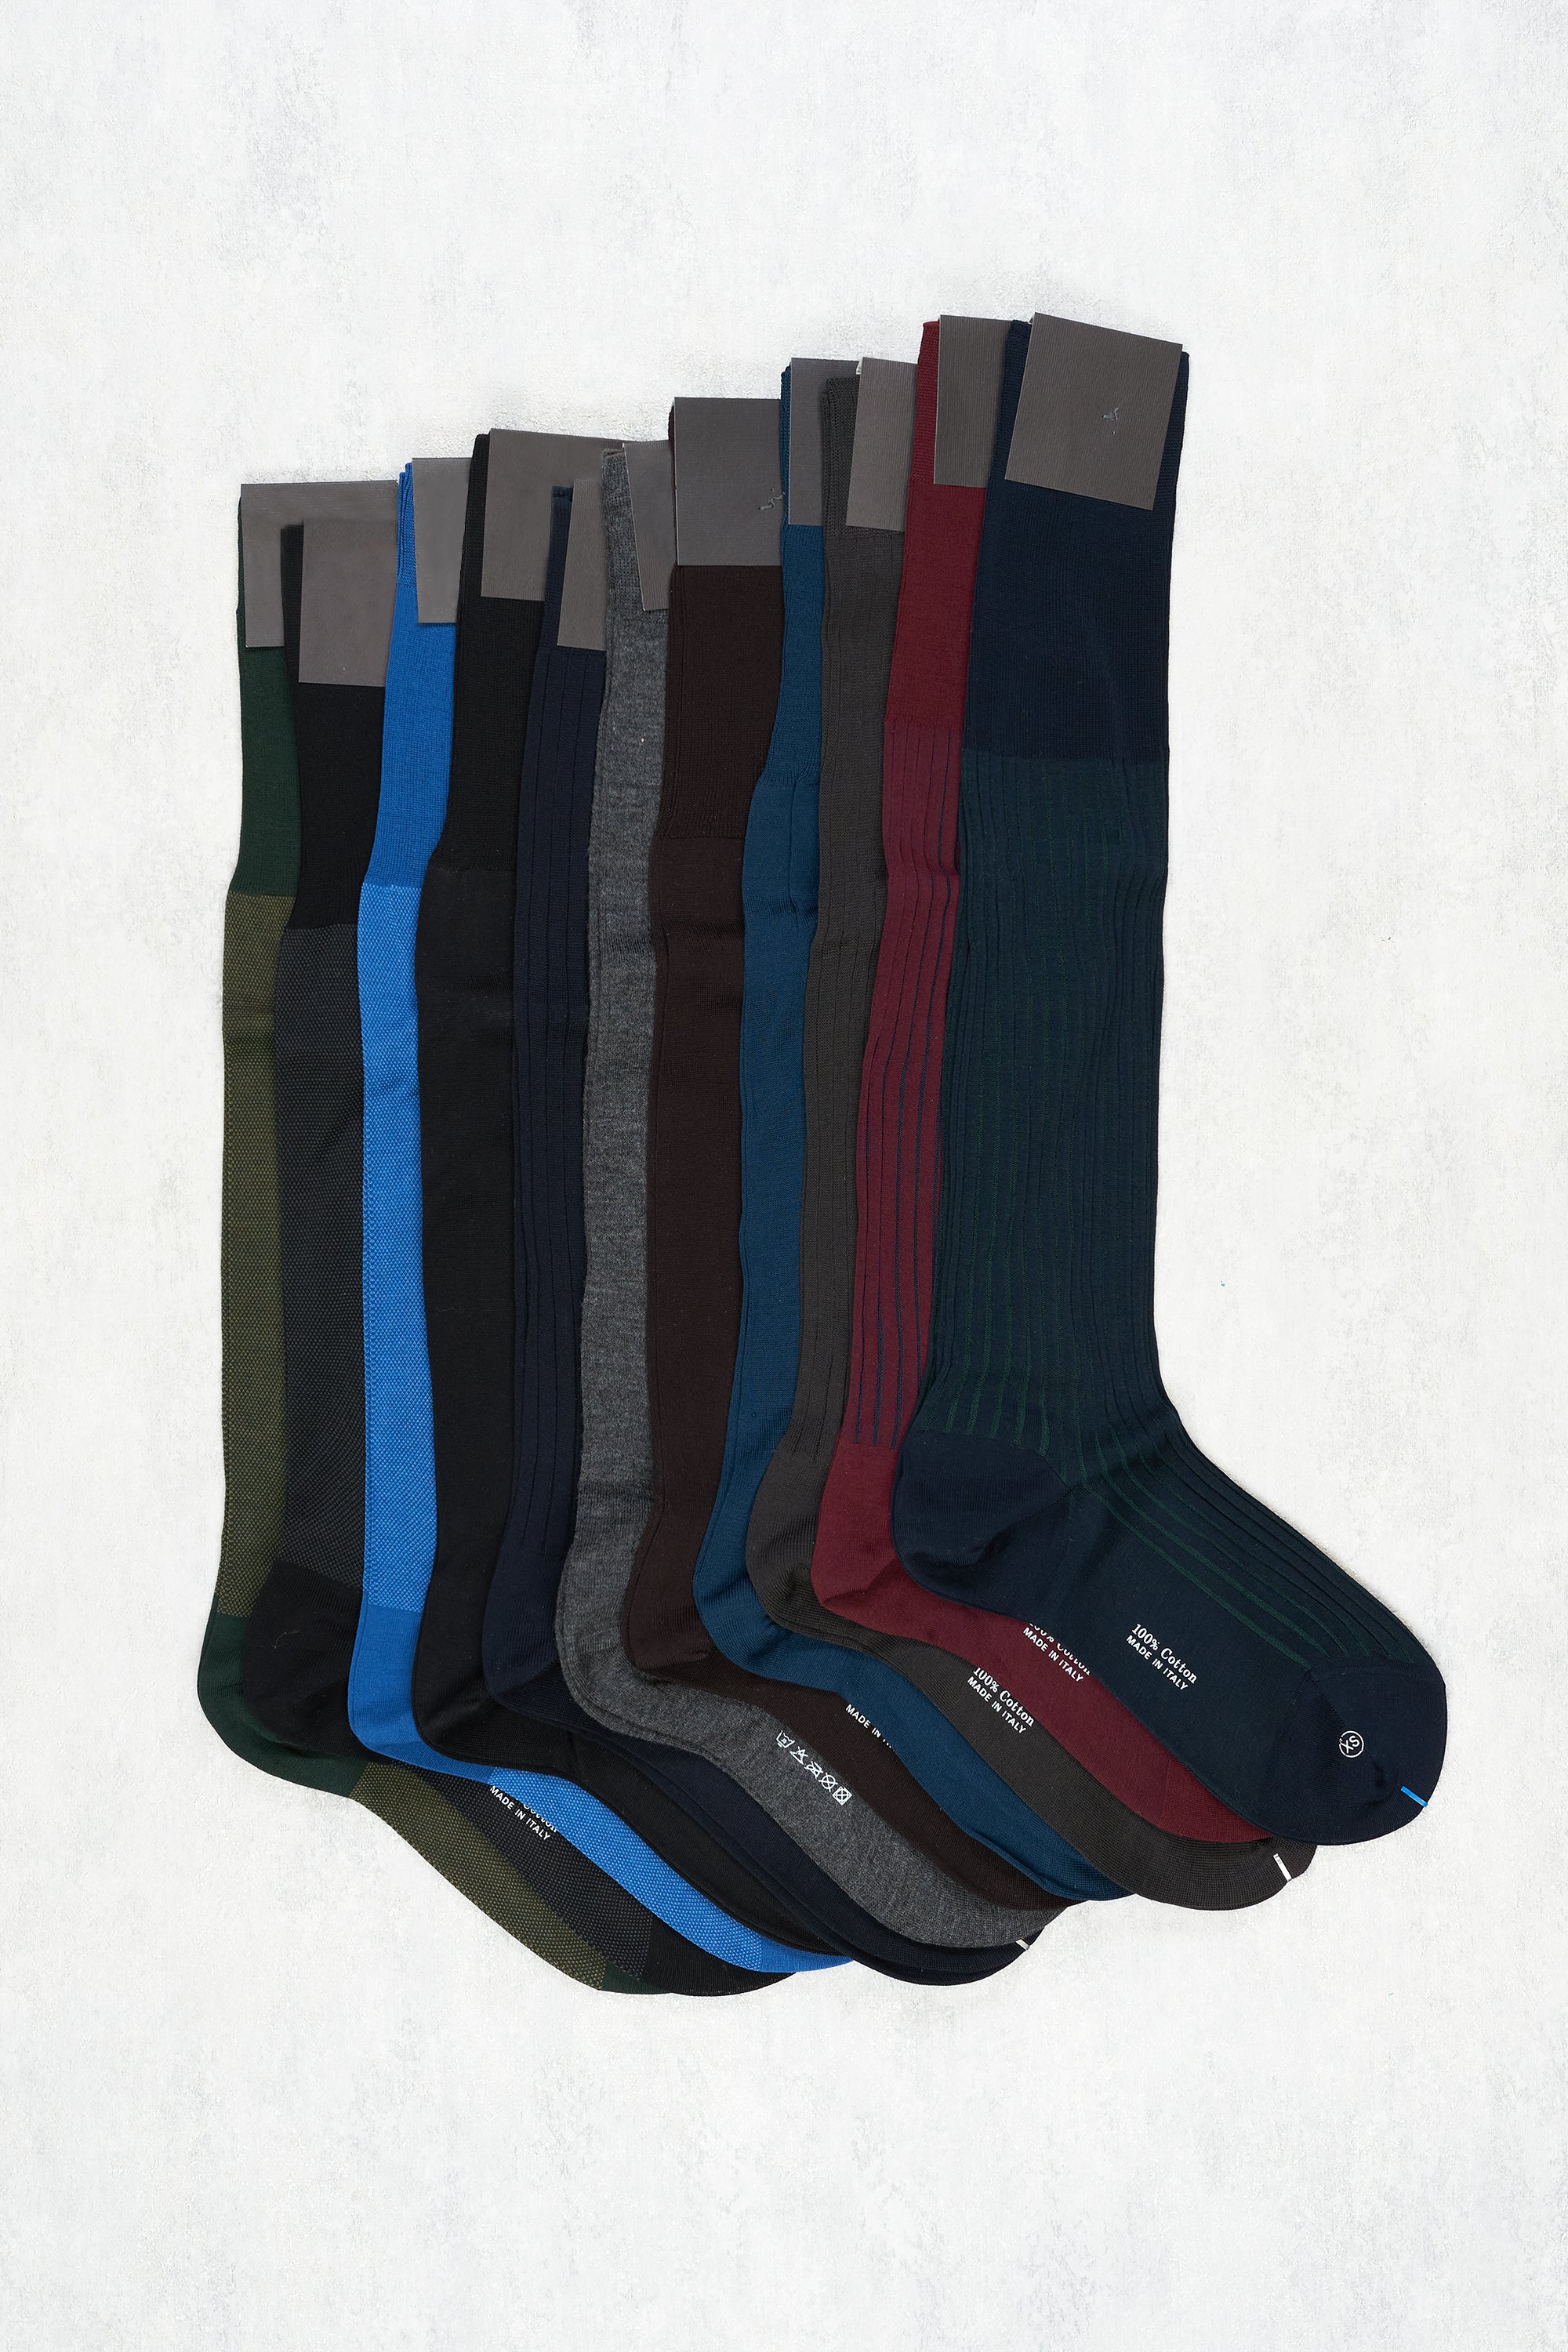 Sorley Long Socks 10 Pack Bundle